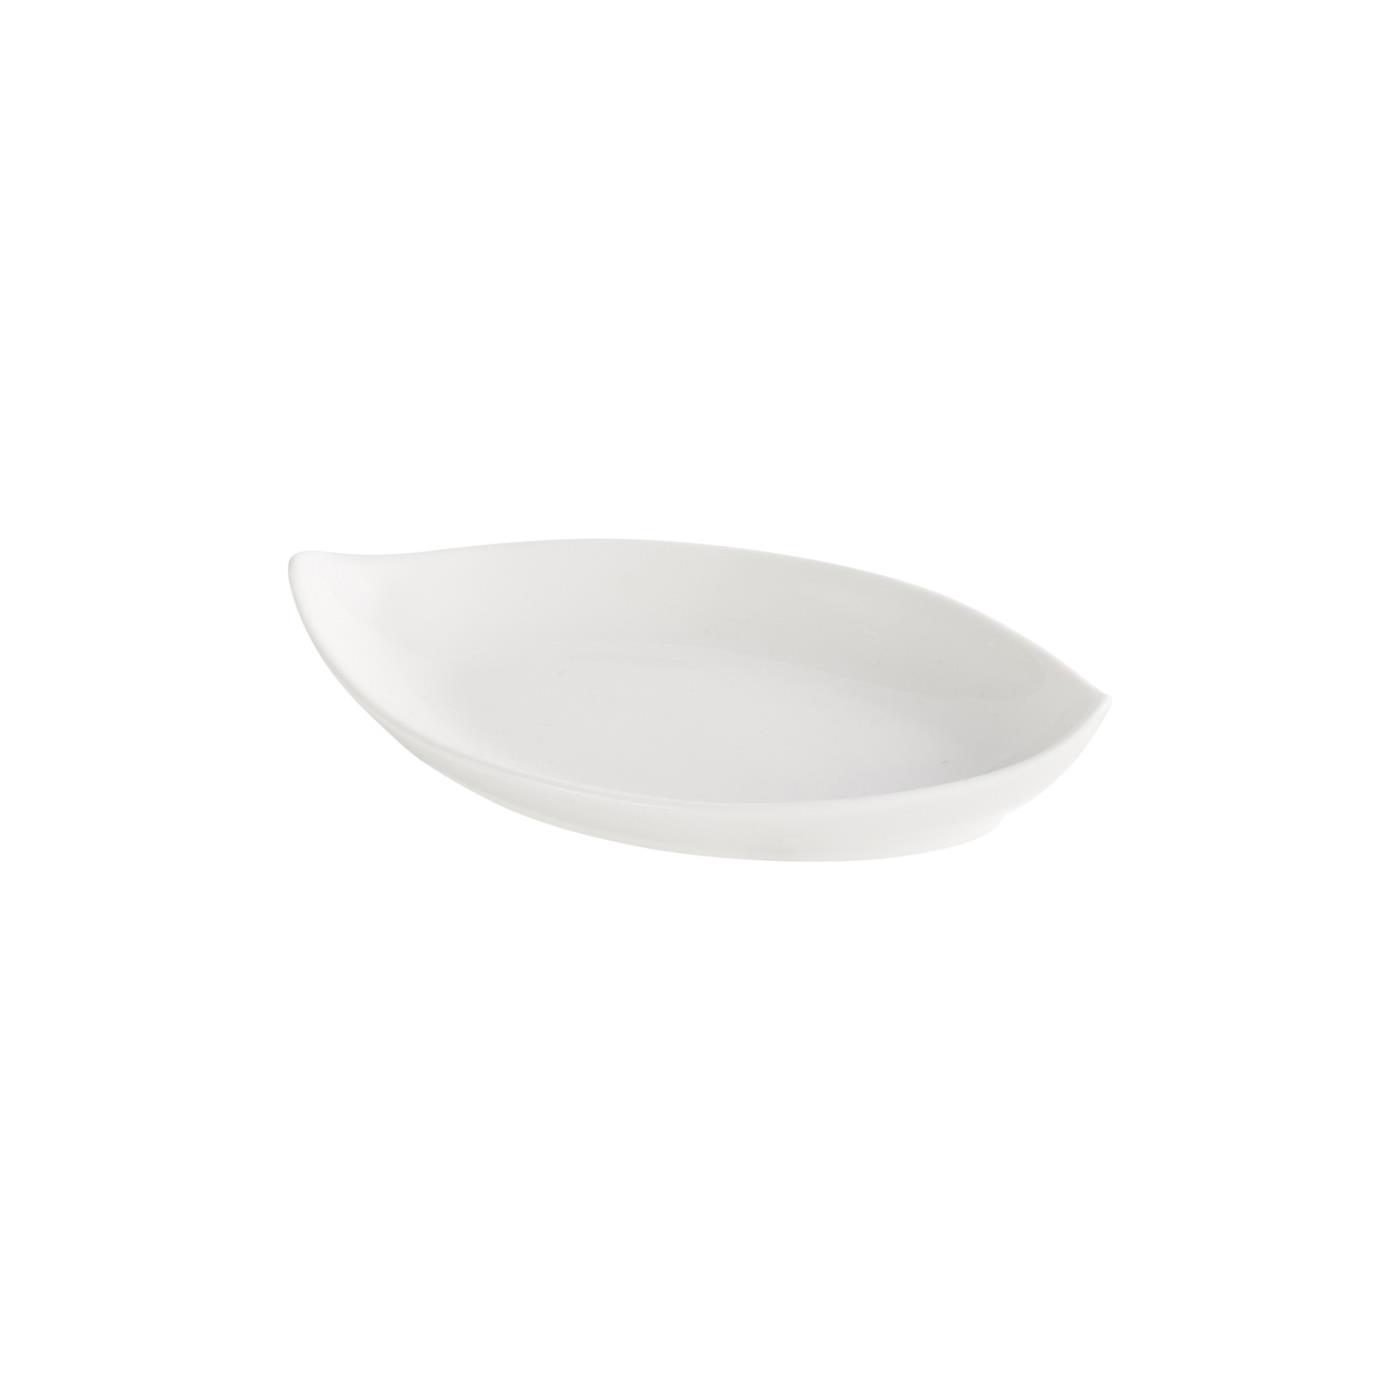 Ceramic Oval Point Tip Tasting Dish - Ceramic Oval Point Tip Tasting Dish 5"